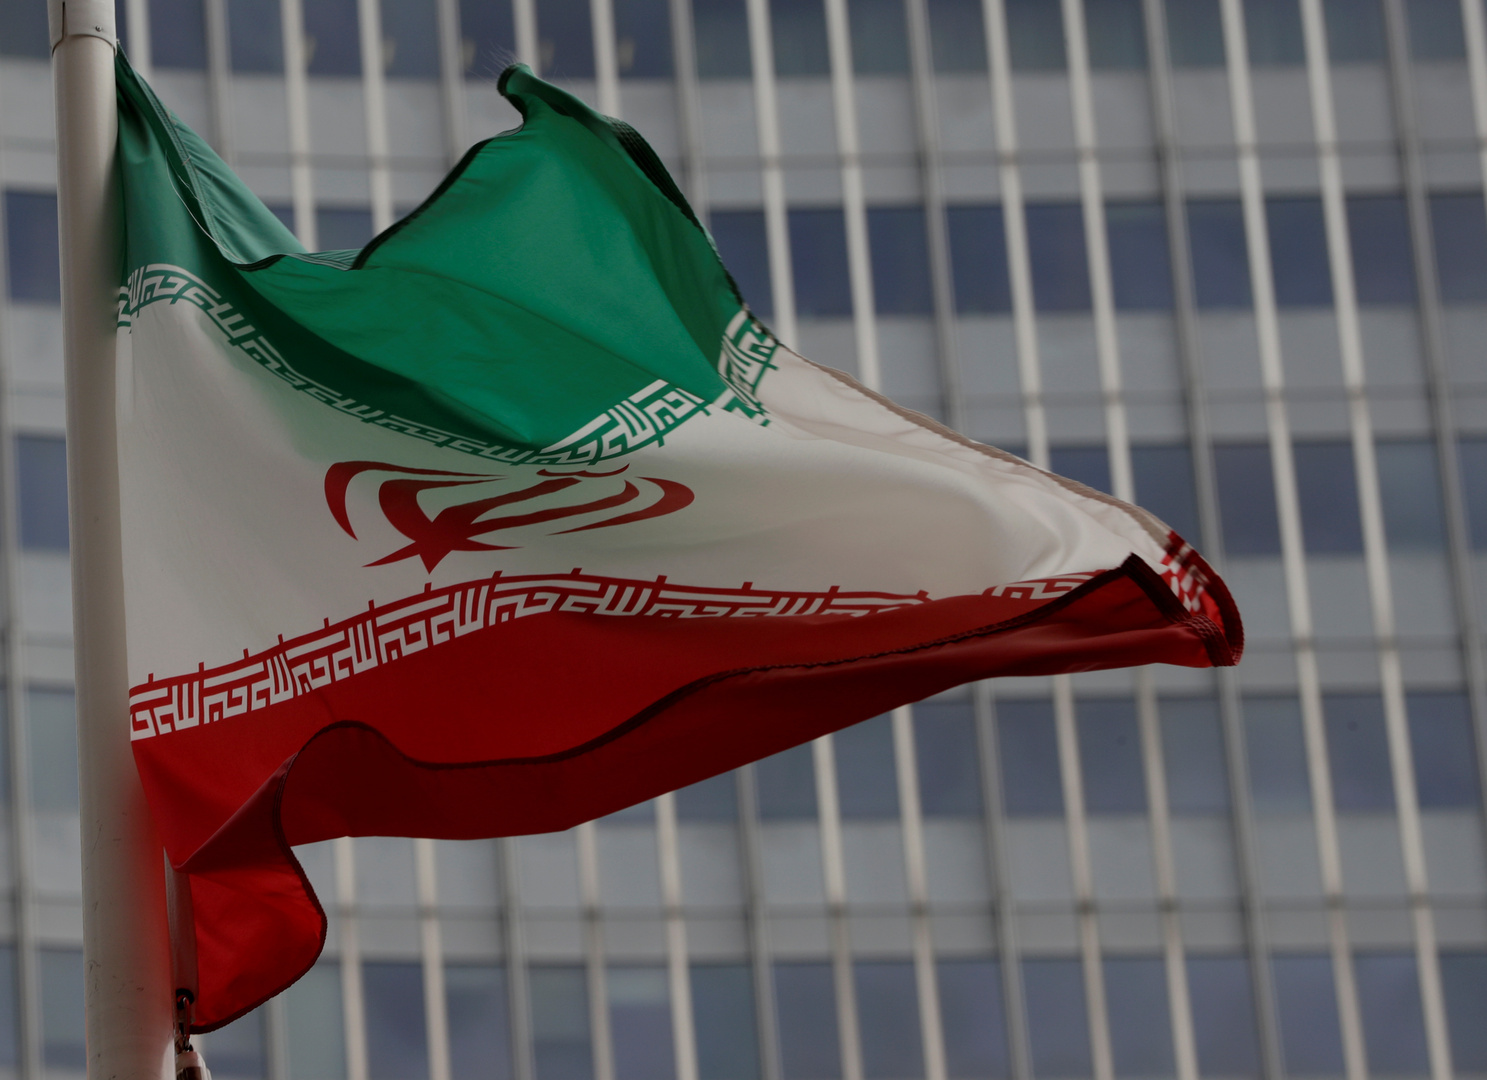 طهران ترد على شروط واشنطن بشأن عودتها إلى الاتفاق النووي